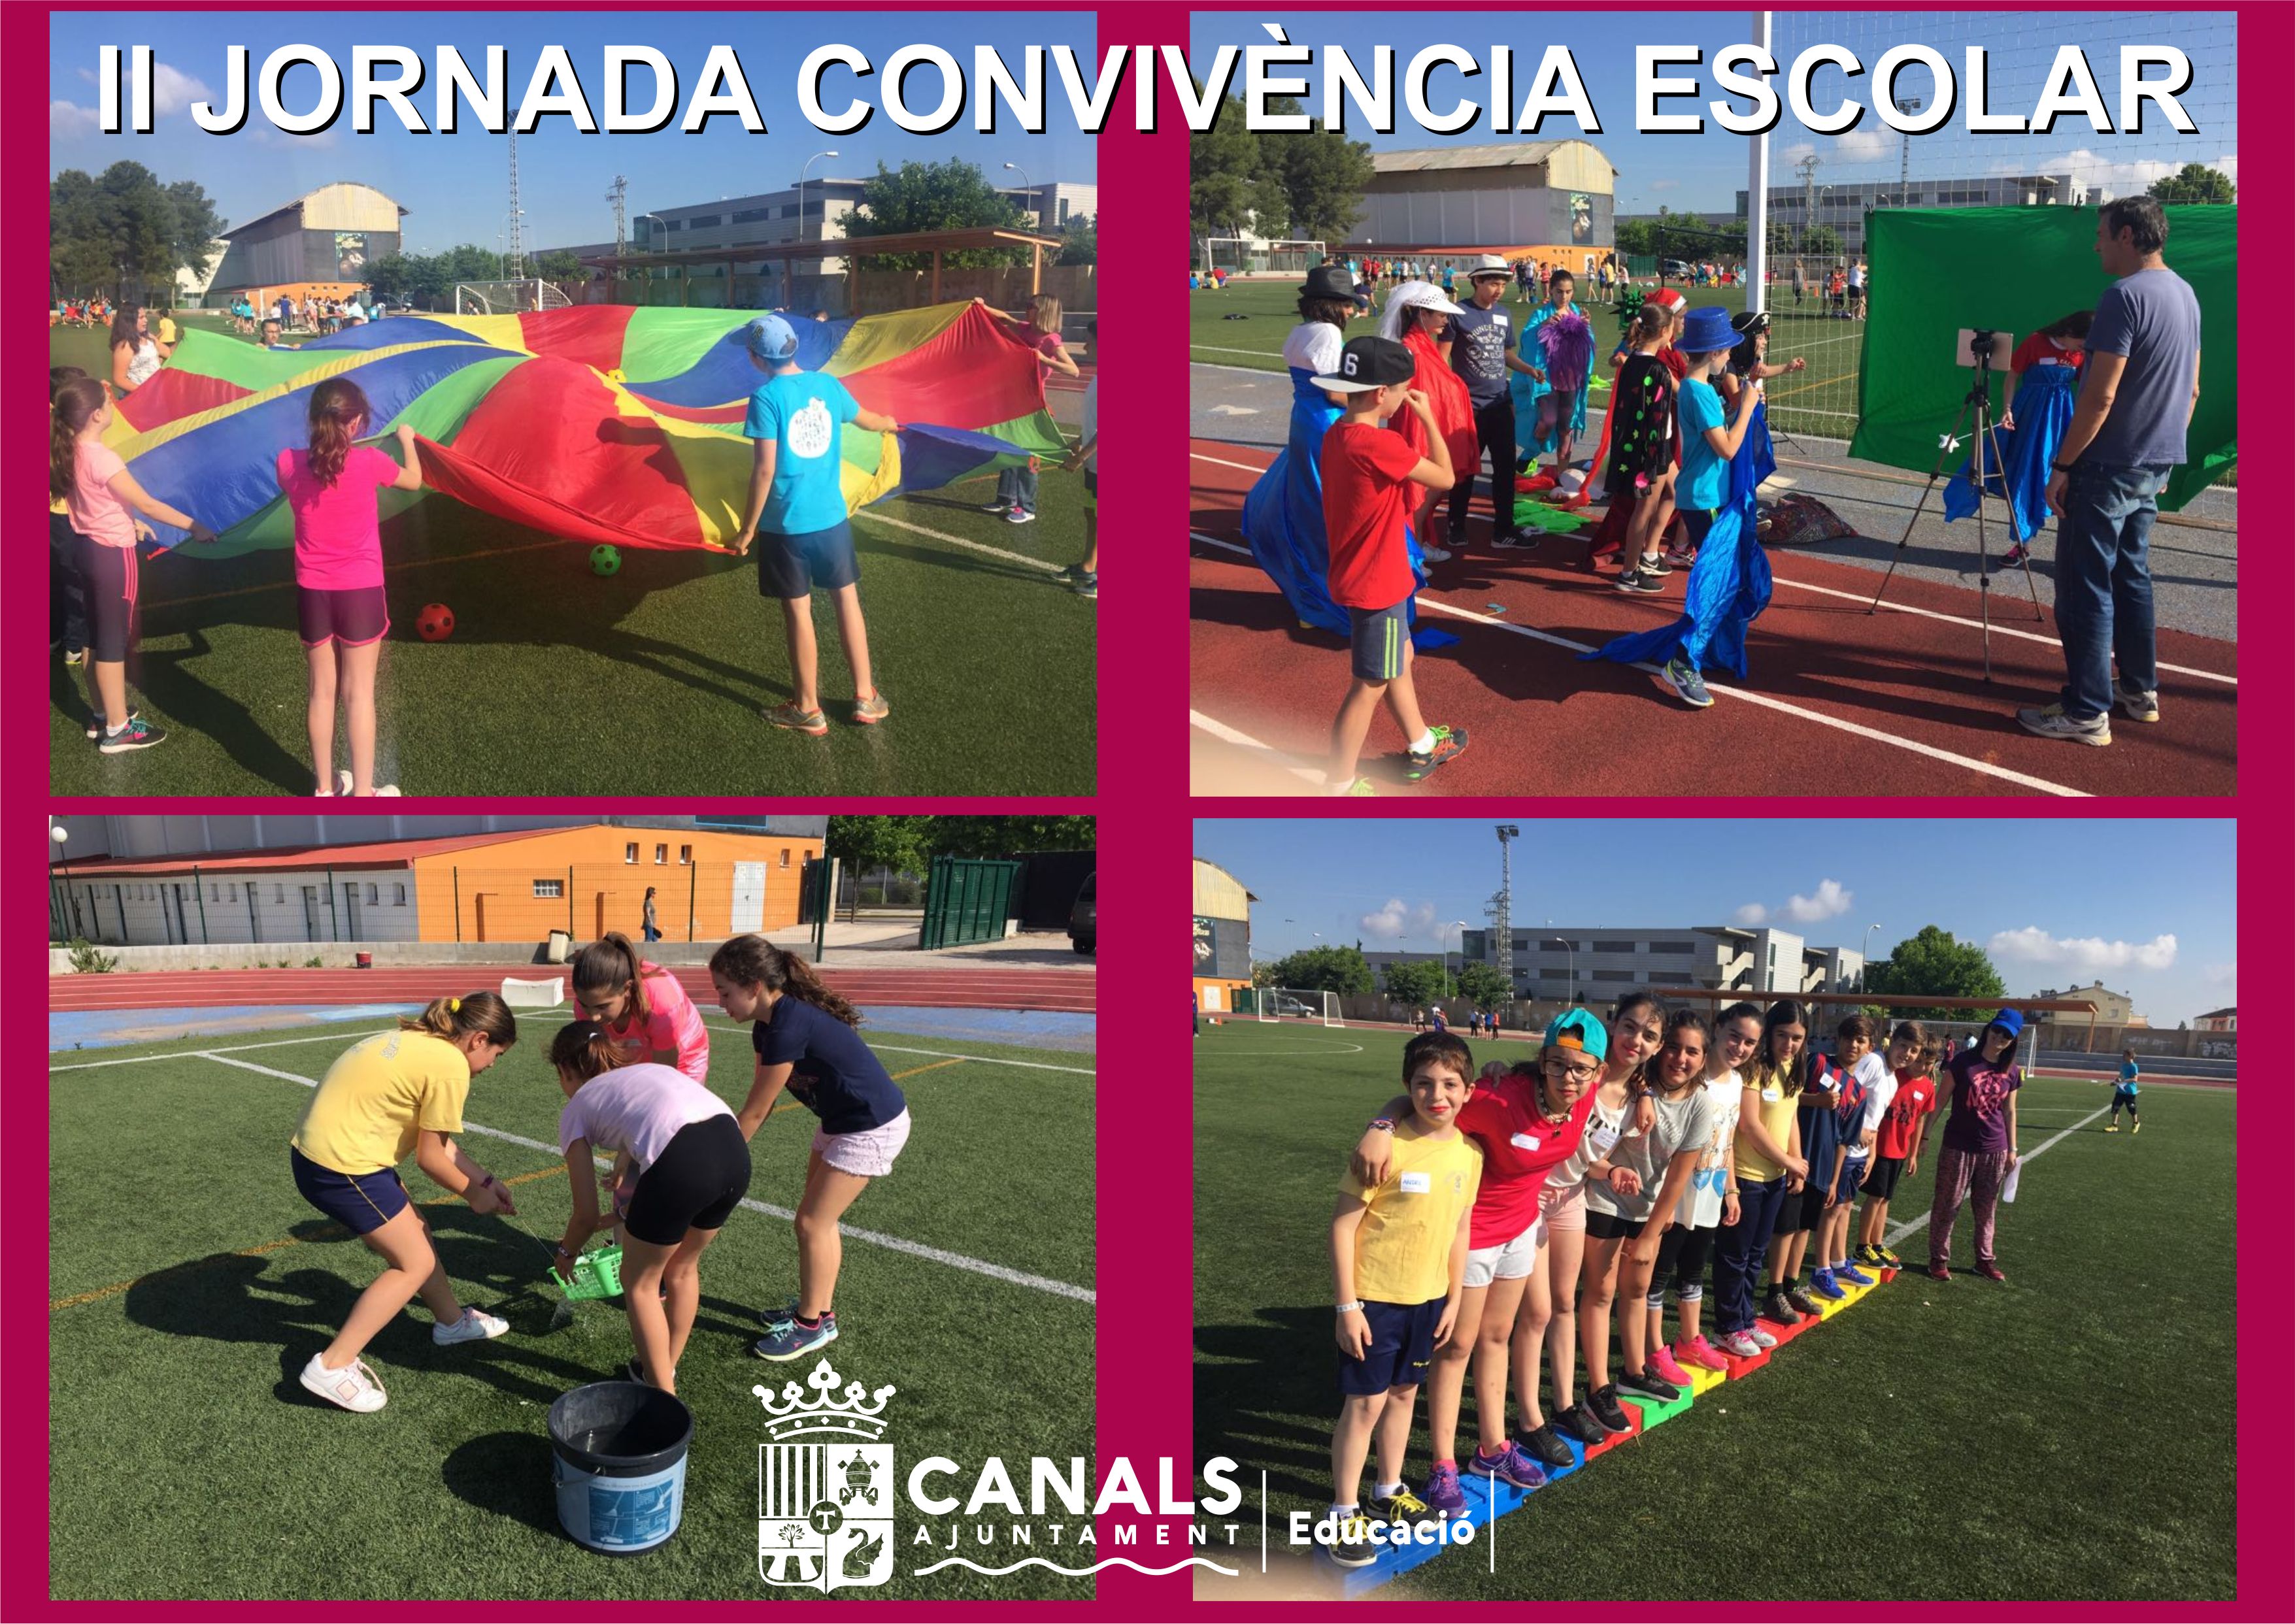 2017.05.23 II Jornada Convivència Escolar. Ajuntament de Canals